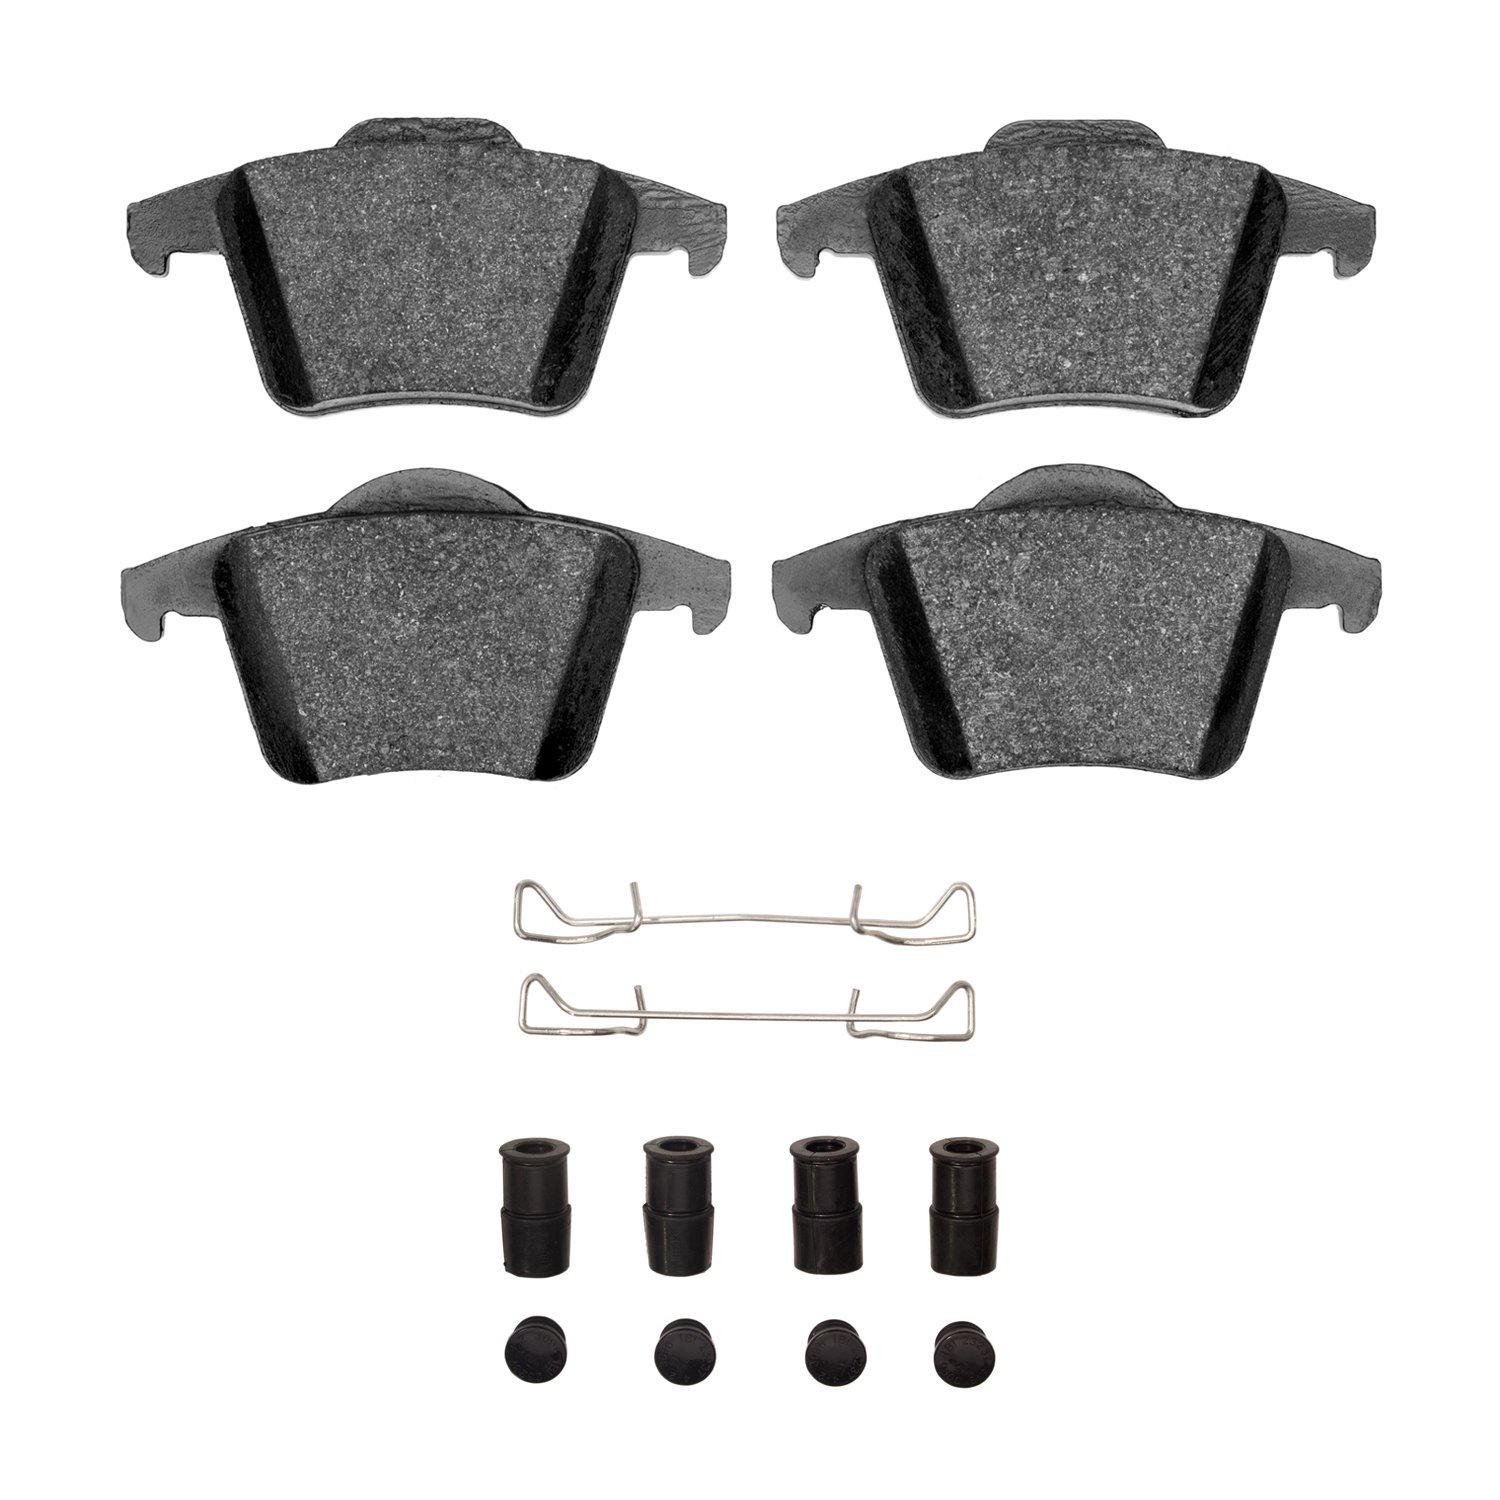 Semi-Metallic Brake Pads & Hardware Kit, 2003-2014 Volvo, Position: Rear